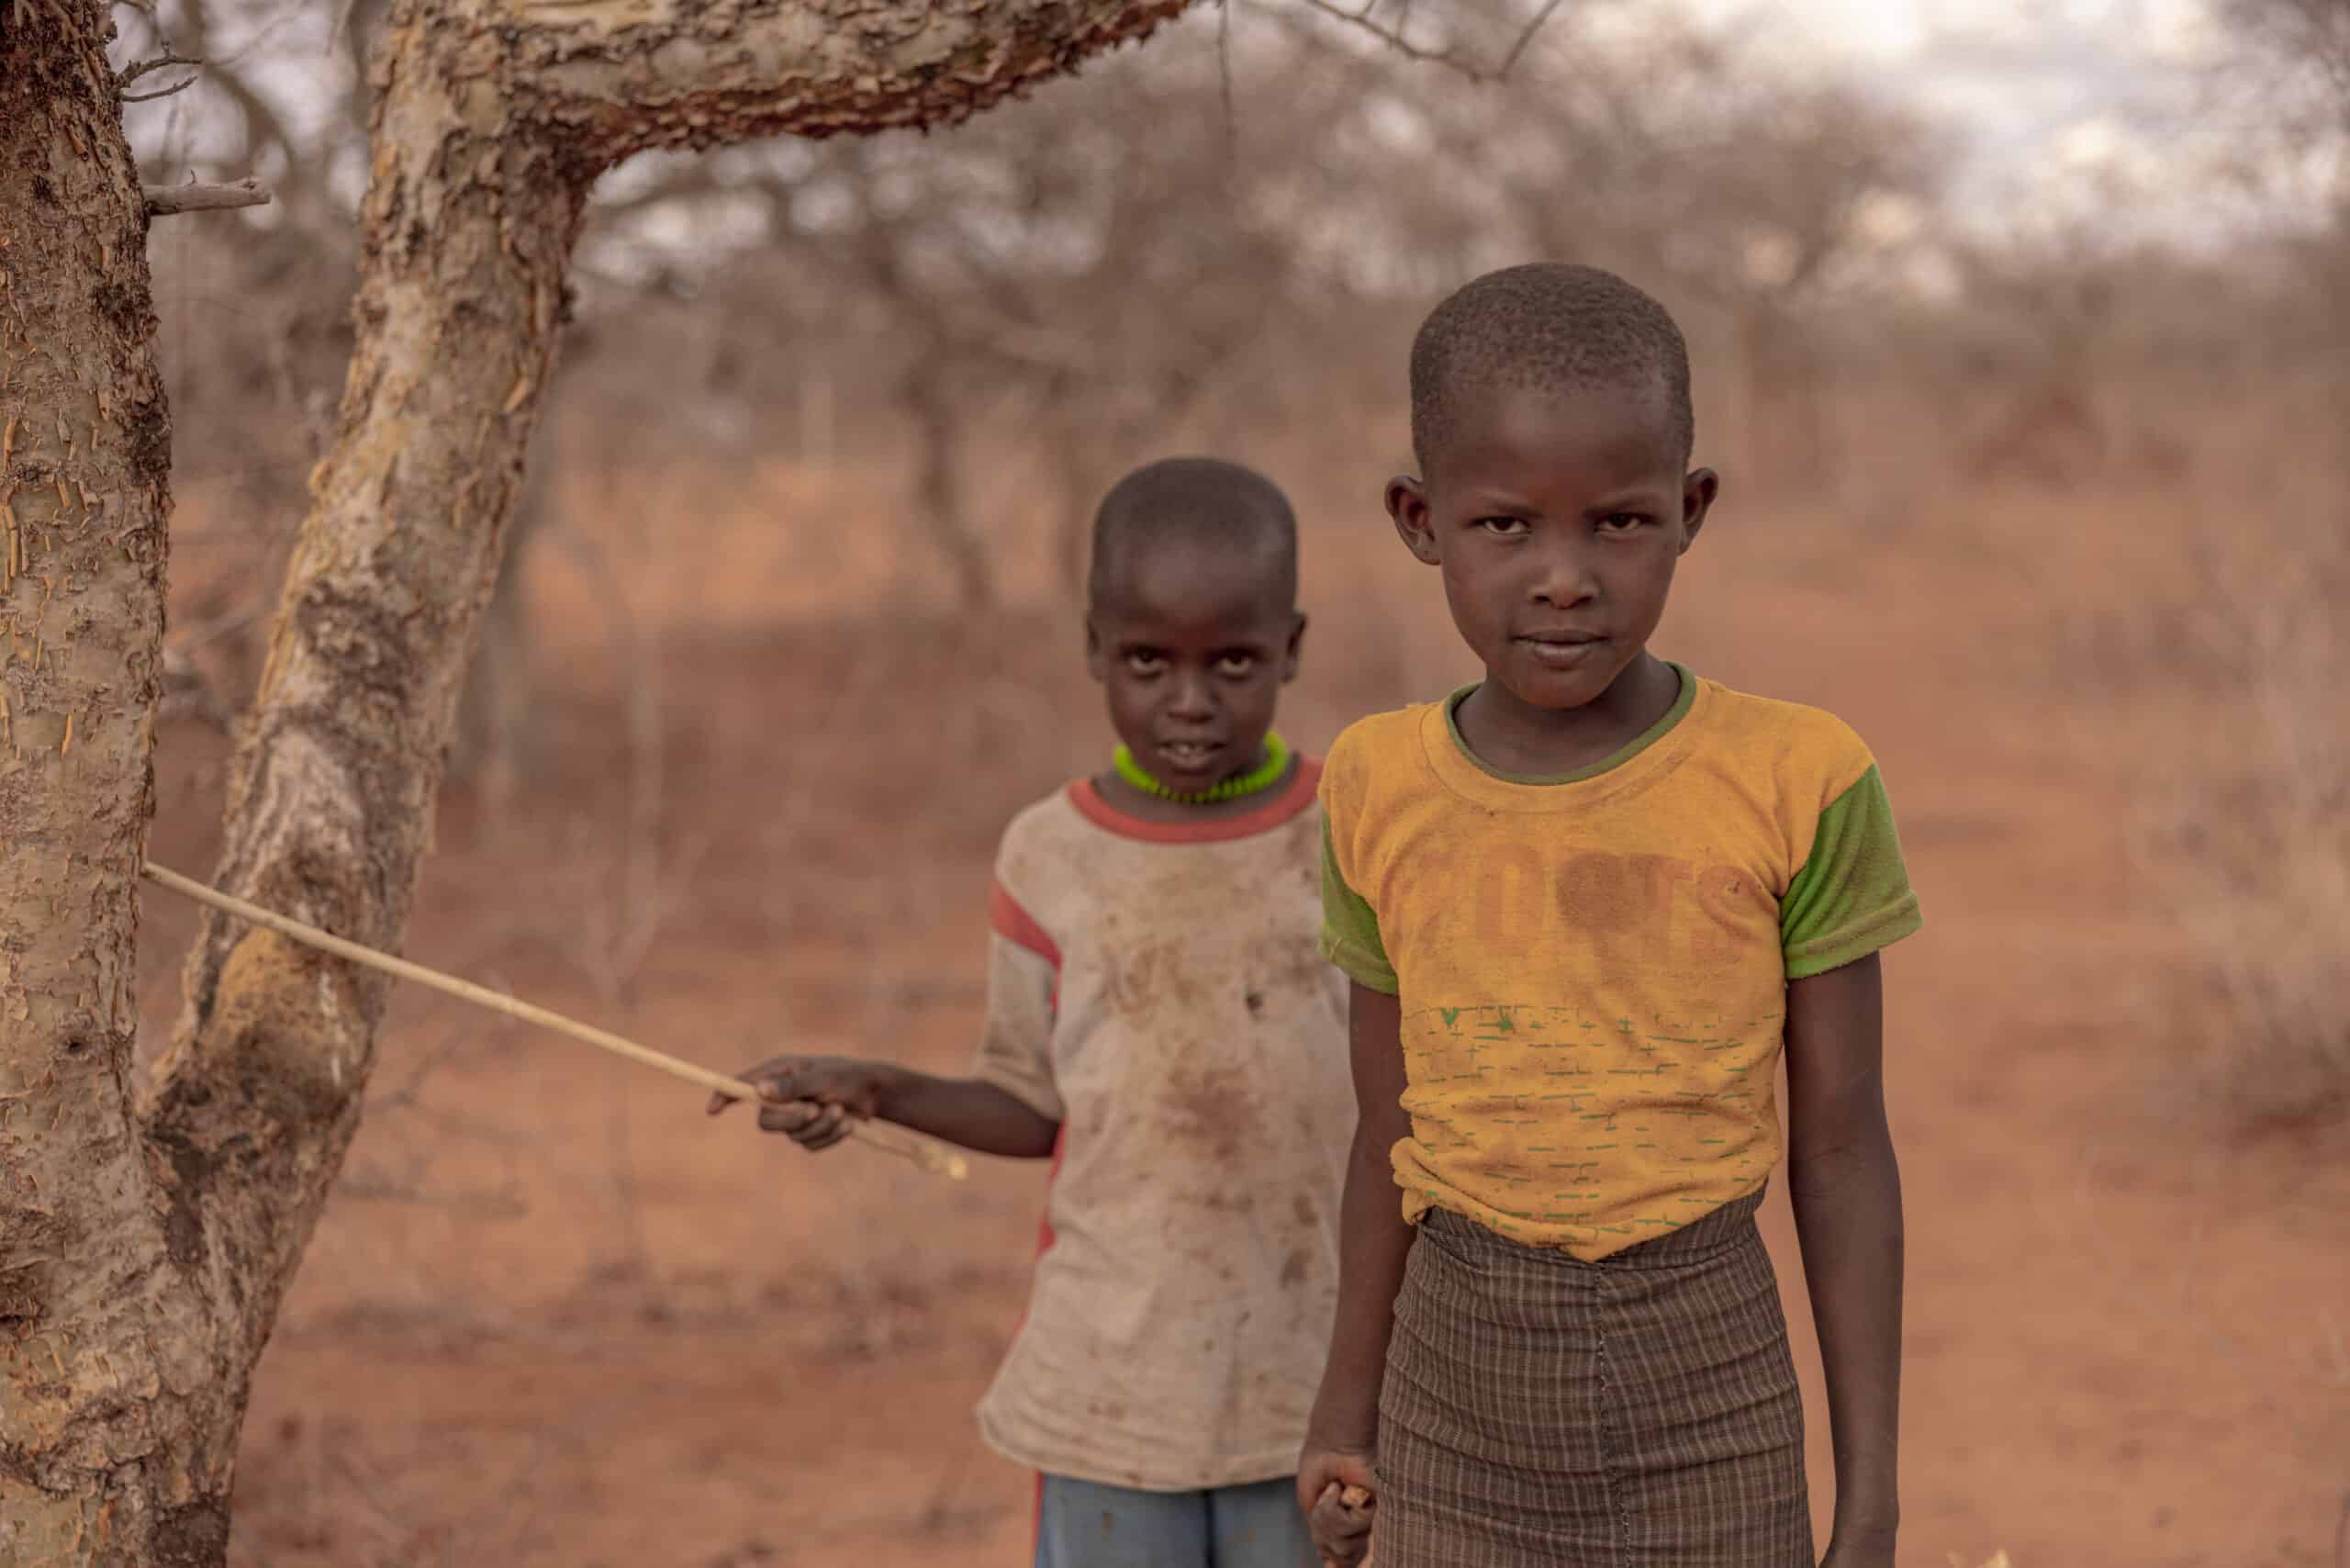 Zwei Kinder stehen in einem trockenen Waldstück. Das Kind im Vordergrund blickt direkt in die Kamera und trägt ein gelbes Hemd. Das Kind im Hintergrund, das ein rotes Hemd trägt, hält einen Stock, der teilweise von einem Baum verdeckt wird. © Fotografie Tomas Rodriguez